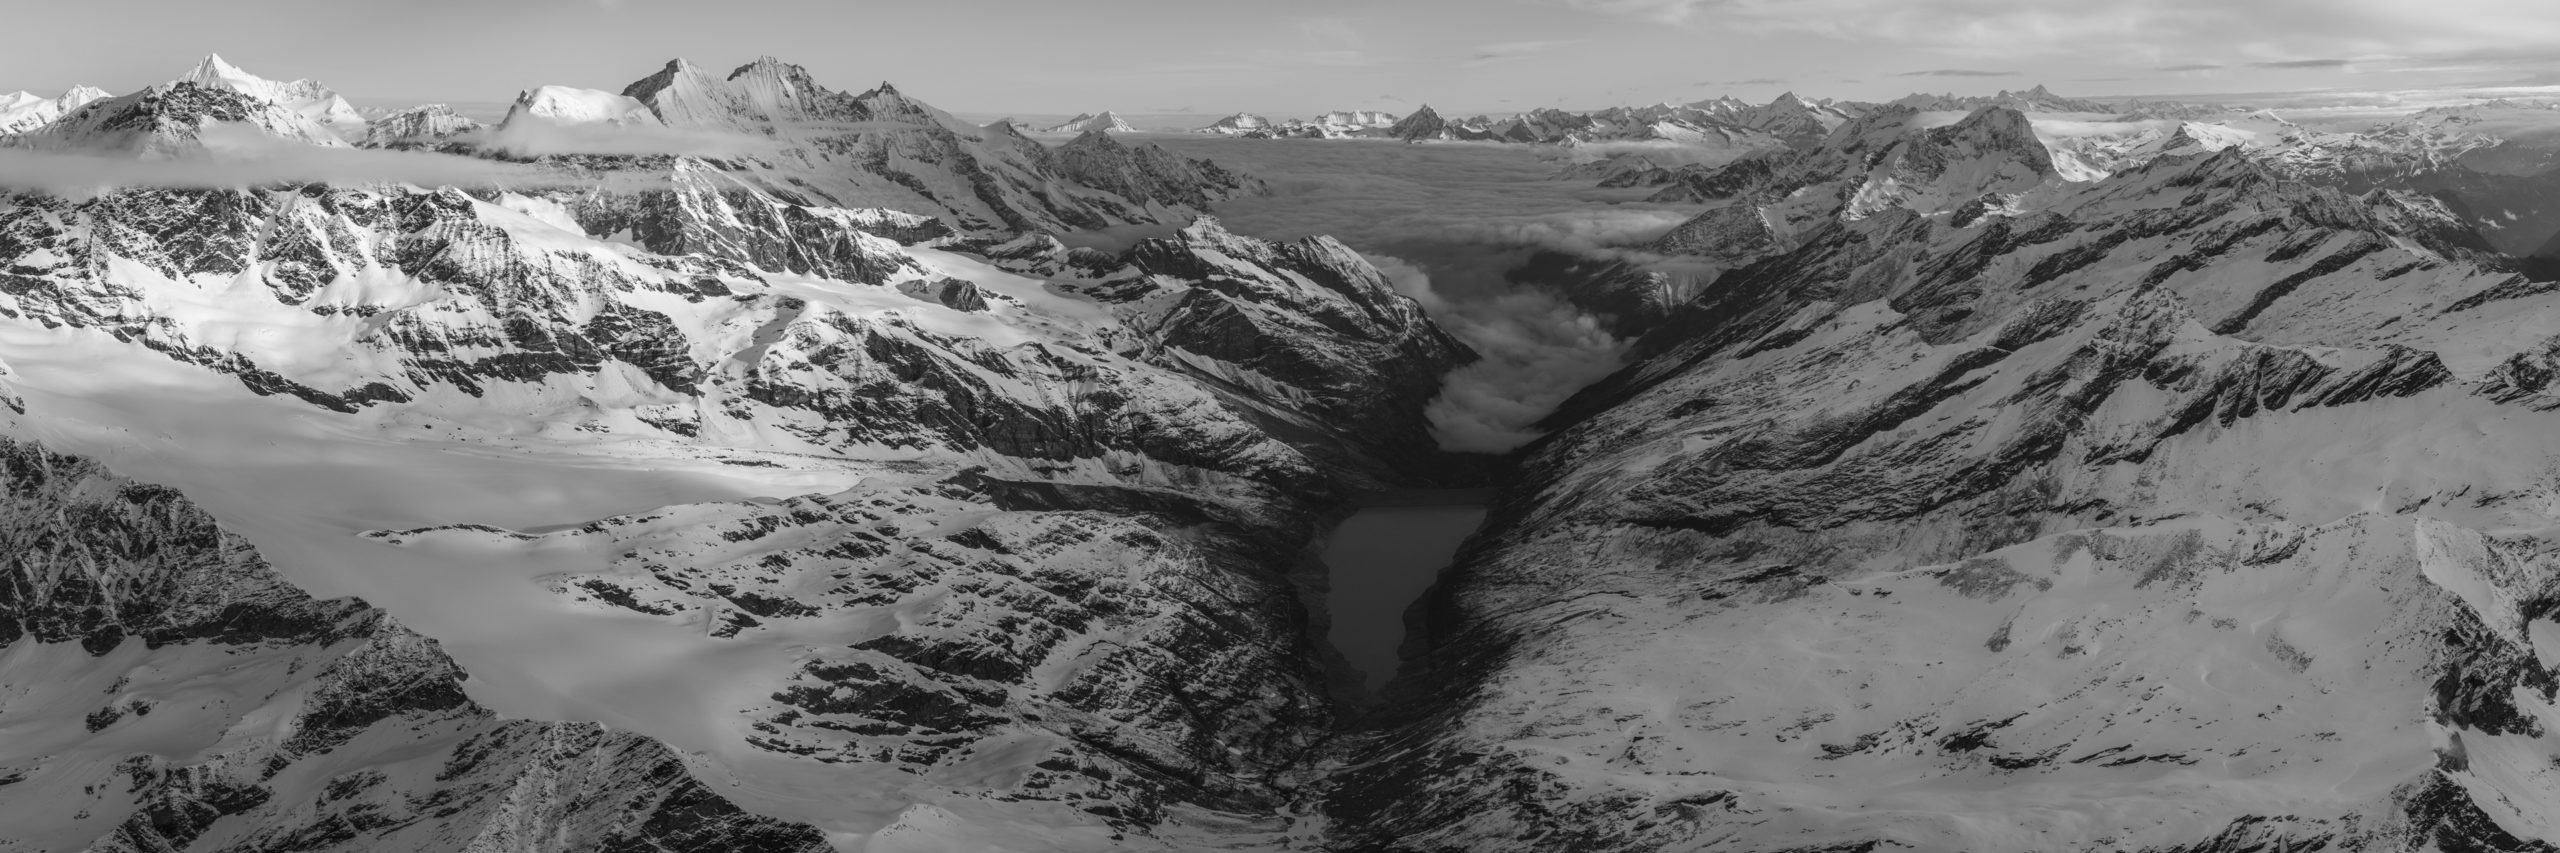 Panorama noir et blanc des Alpes du Nord et des montagnes suisses de saas fee